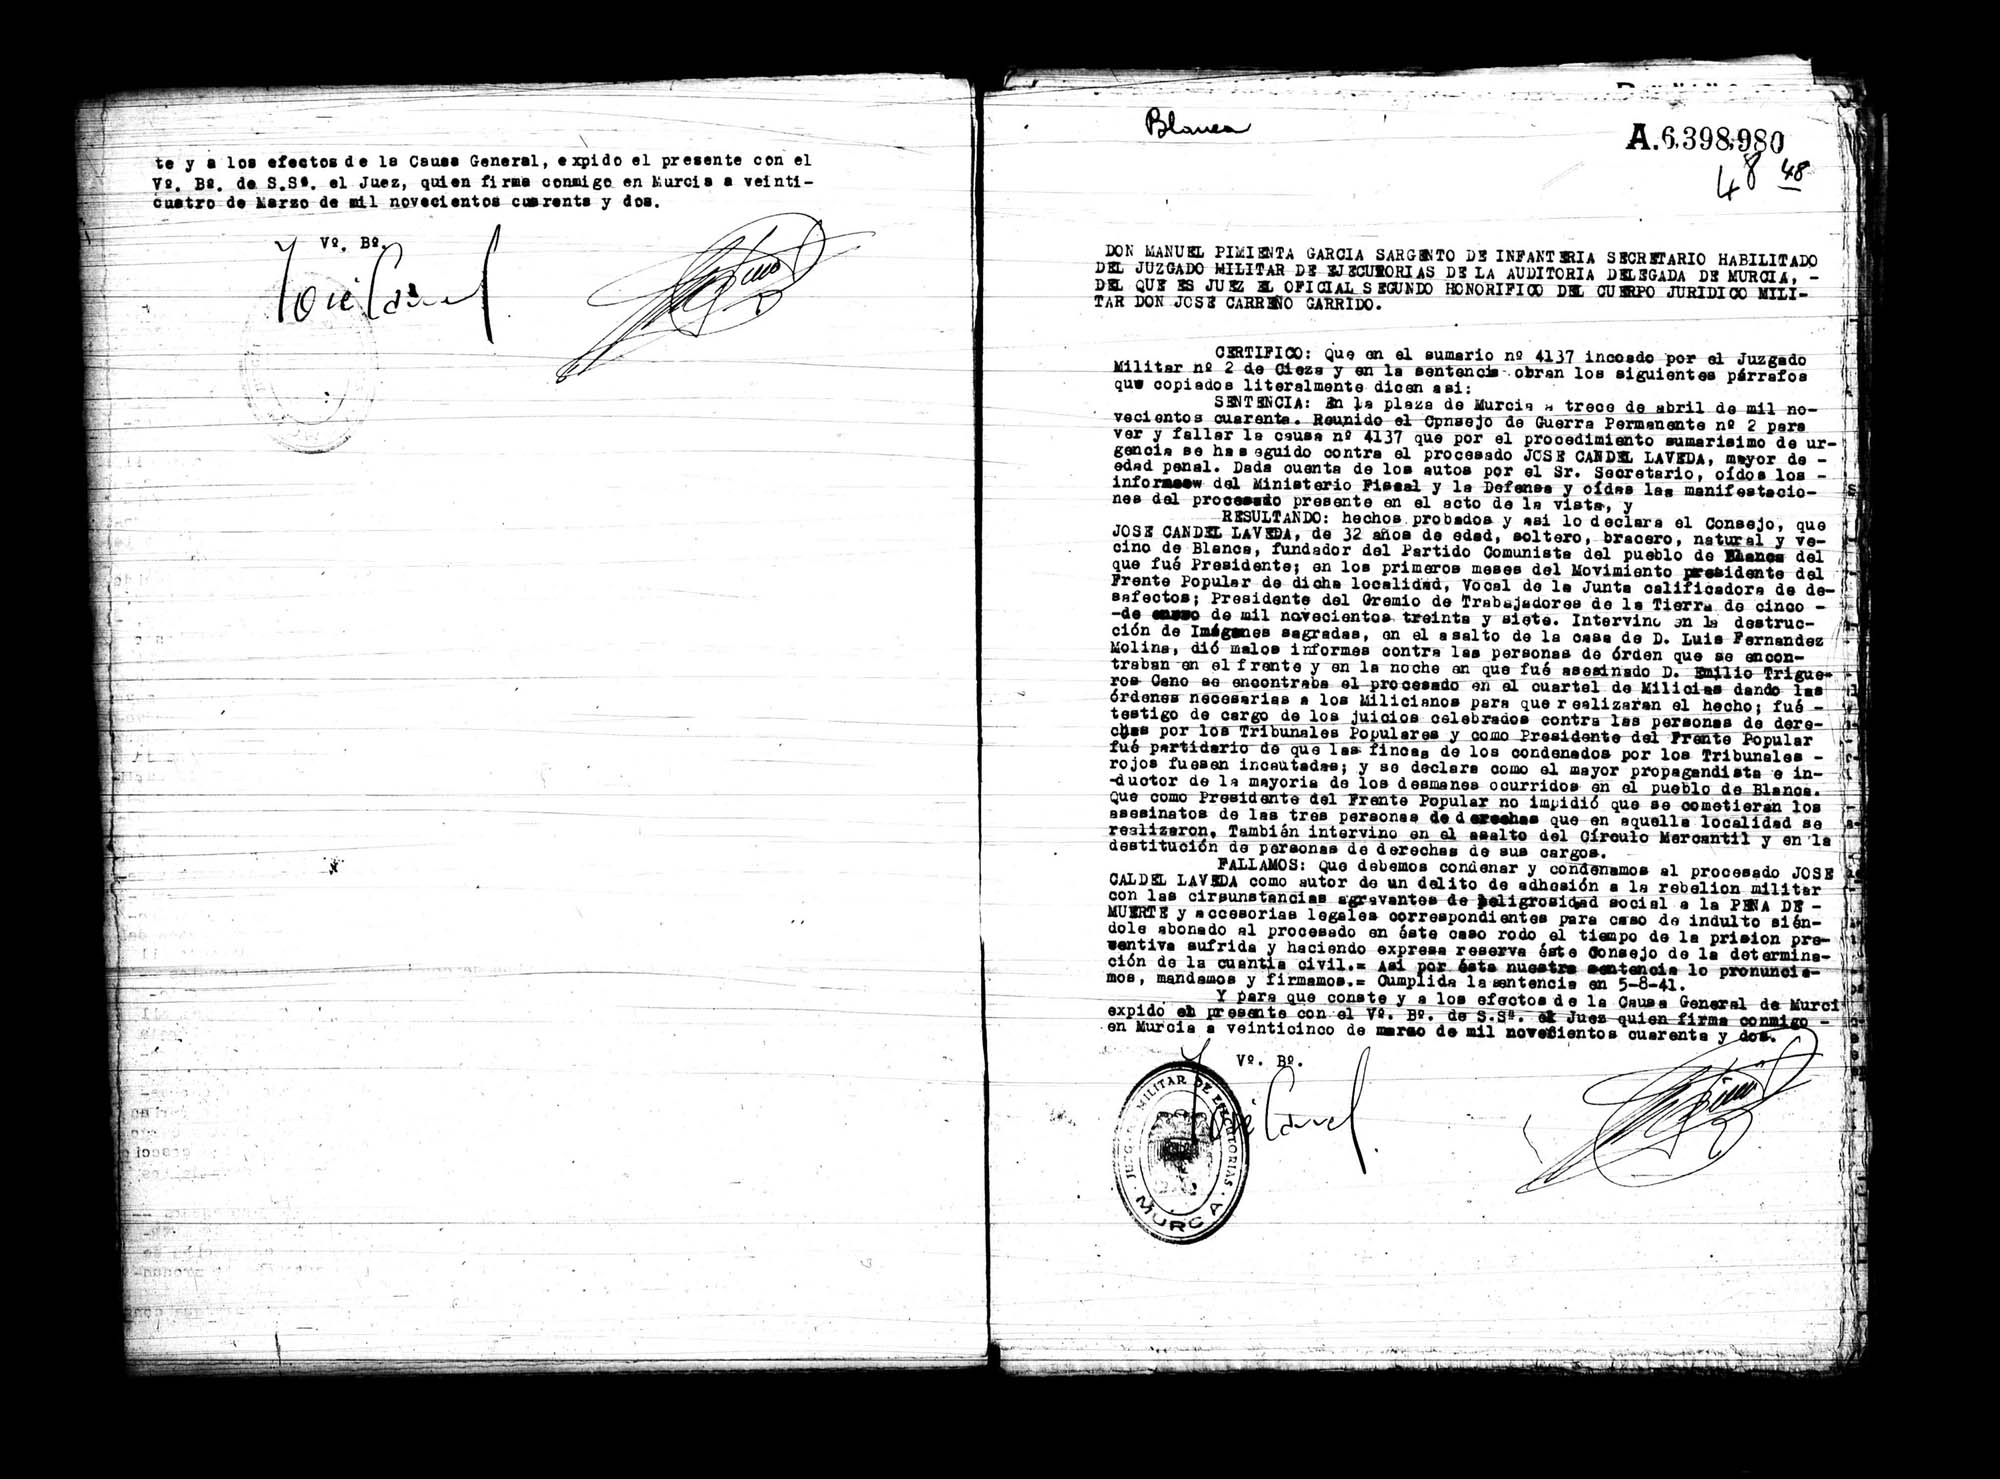 Certificado de la sentencia pronunciada contra Ginés Campos Gómez y Pedro Romero Costa, causa 351, el 29 de julio de 1939 en Murcia.